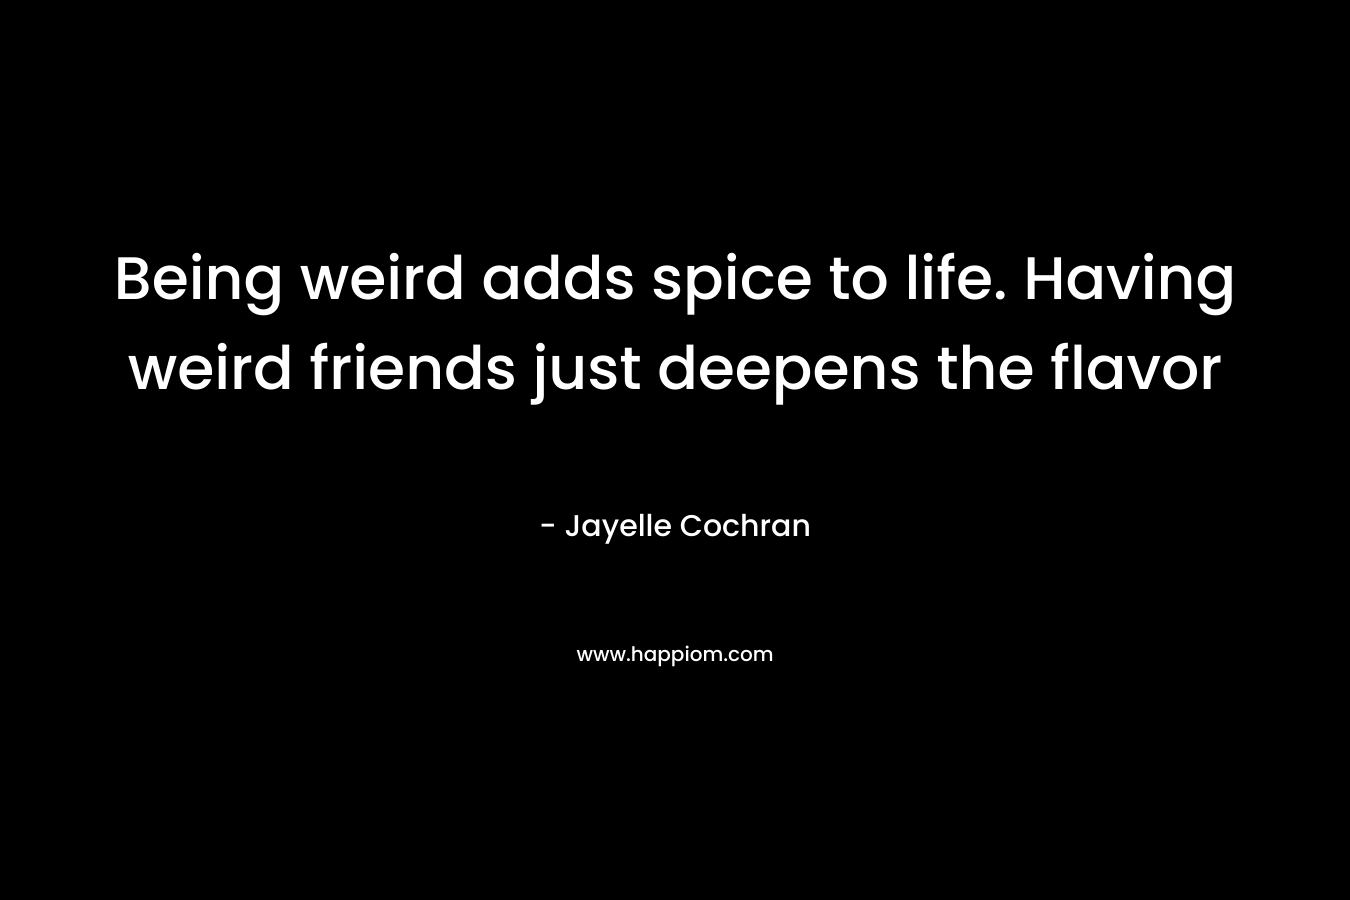 Being weird adds spice to life. Having weird friends just deepens the flavor